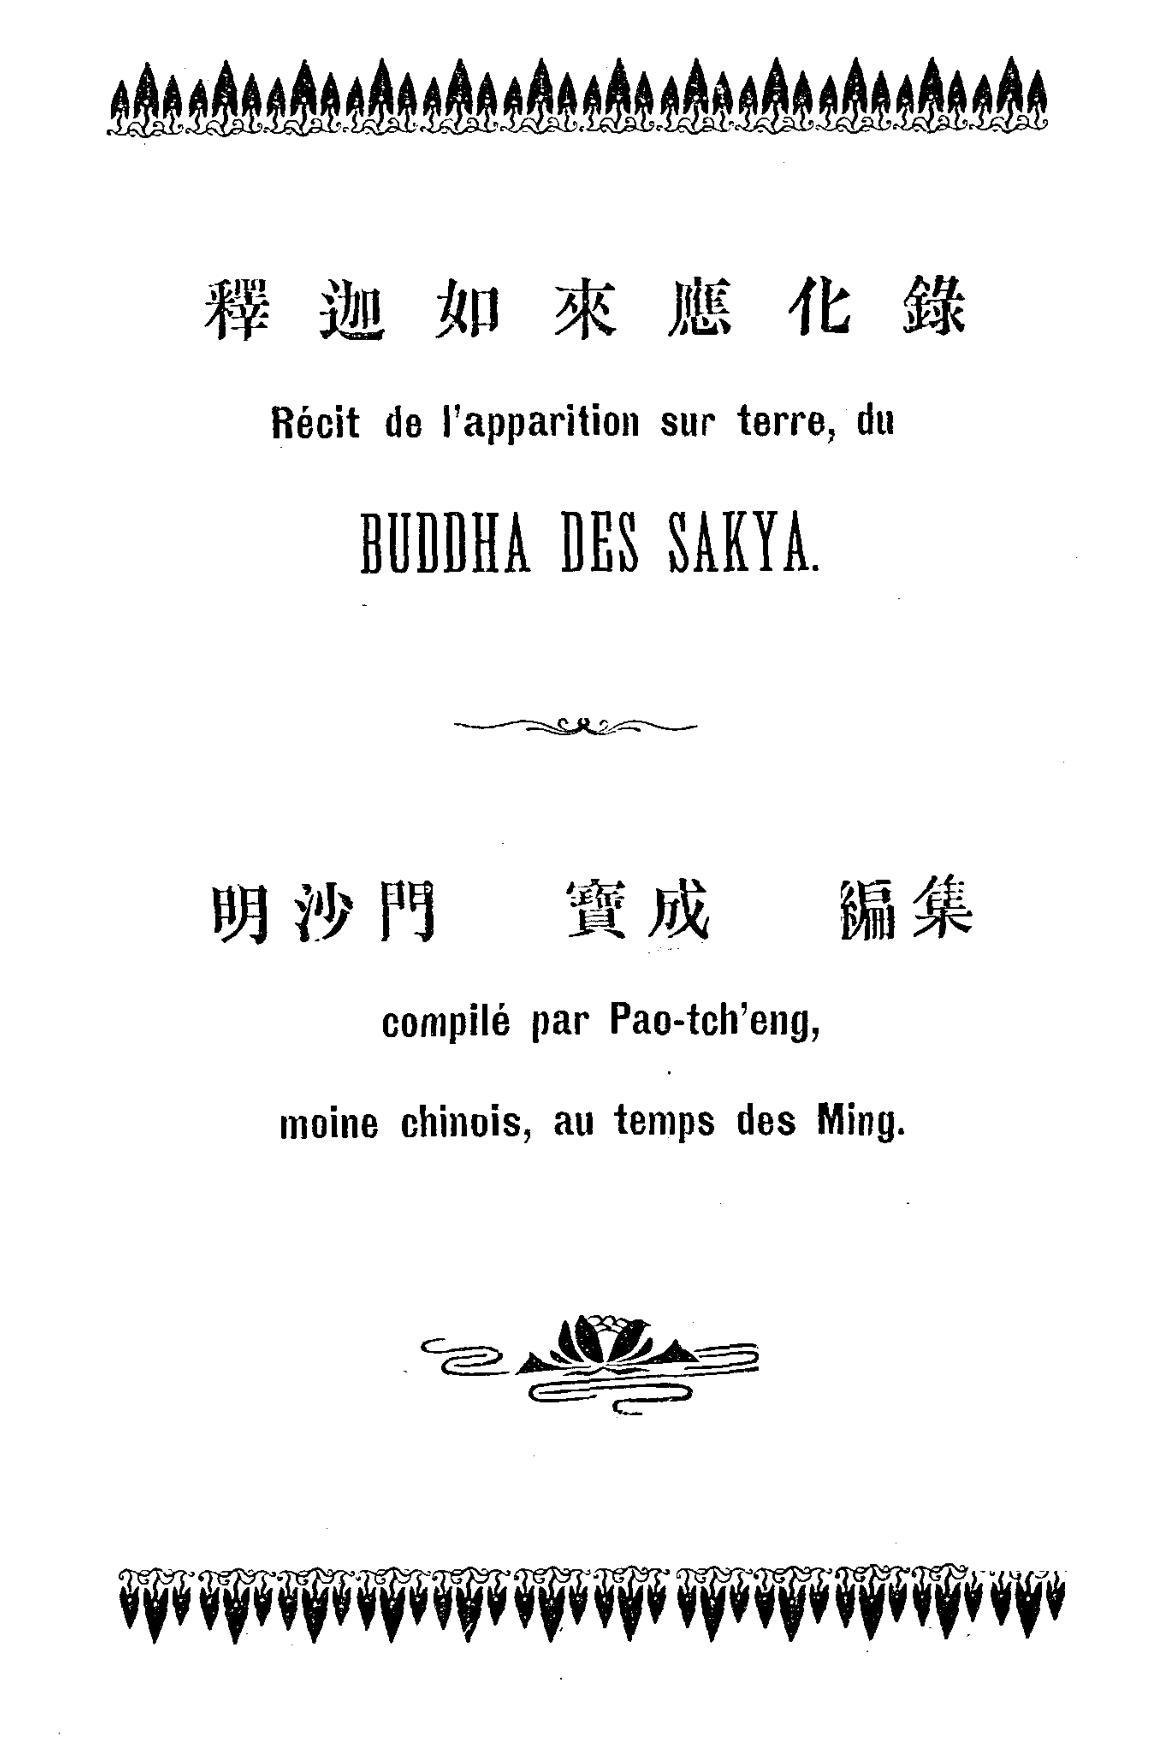 File:Shijia rulai yinghua lu 1913.png